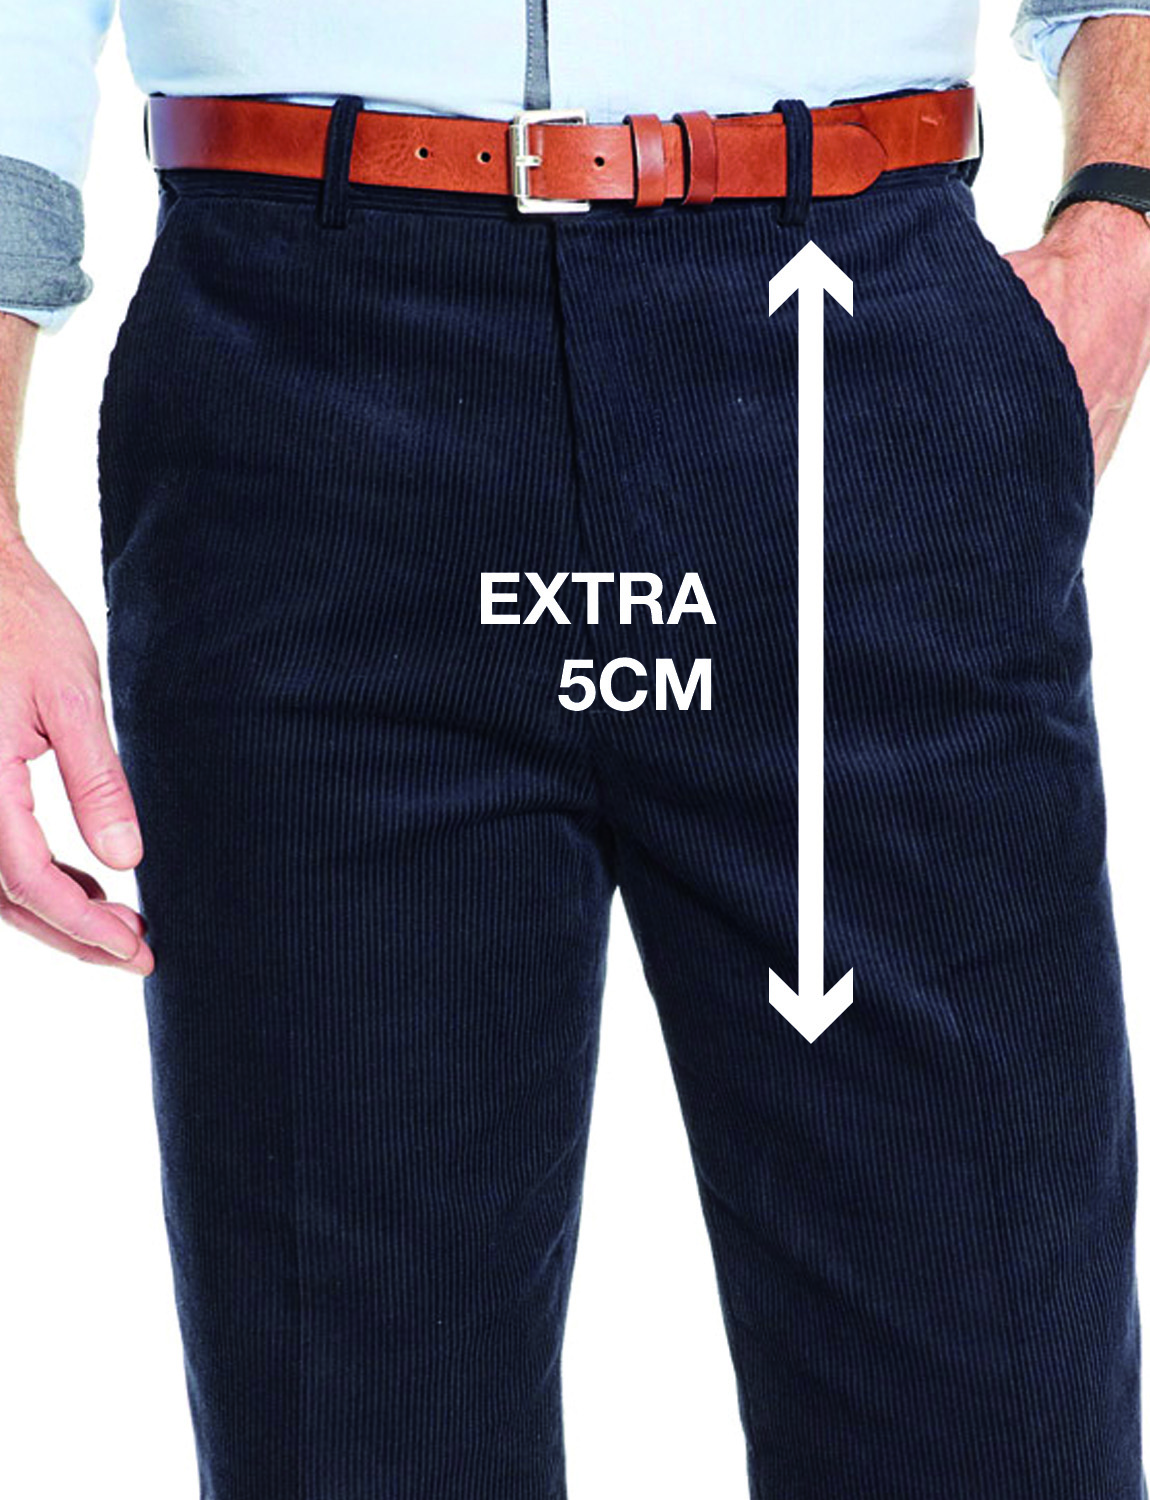 Men's Clothing & Accessories: Men's Pants Low Rise